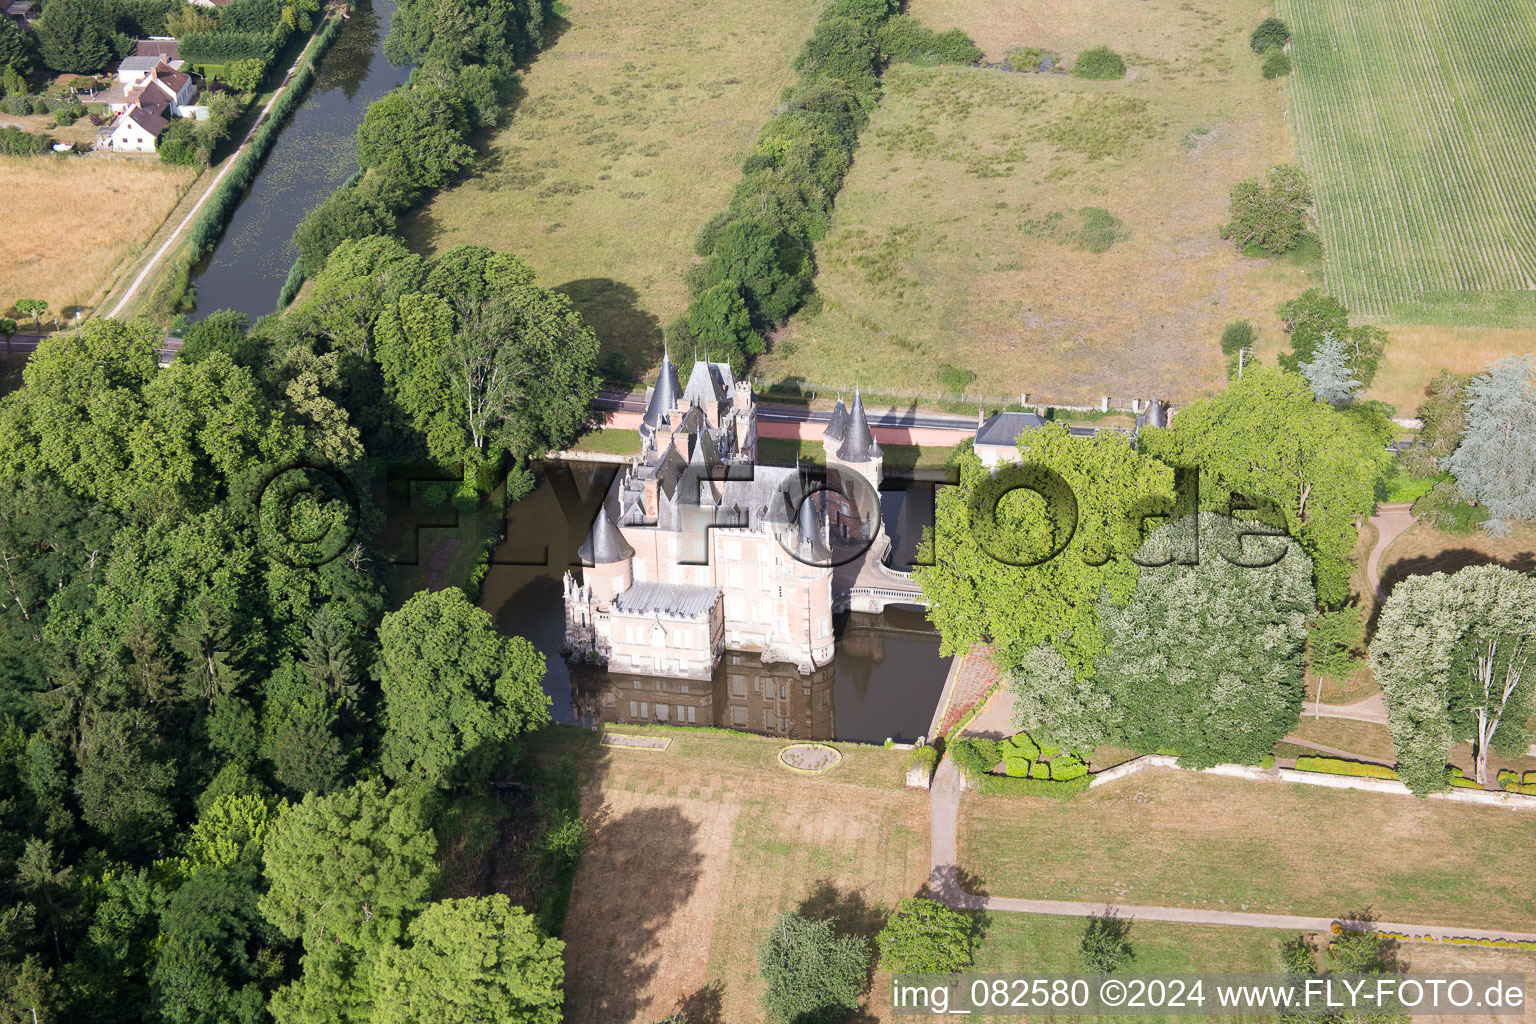 Château de Combreux à Combreux dans le département Loiret, France vue d'en haut